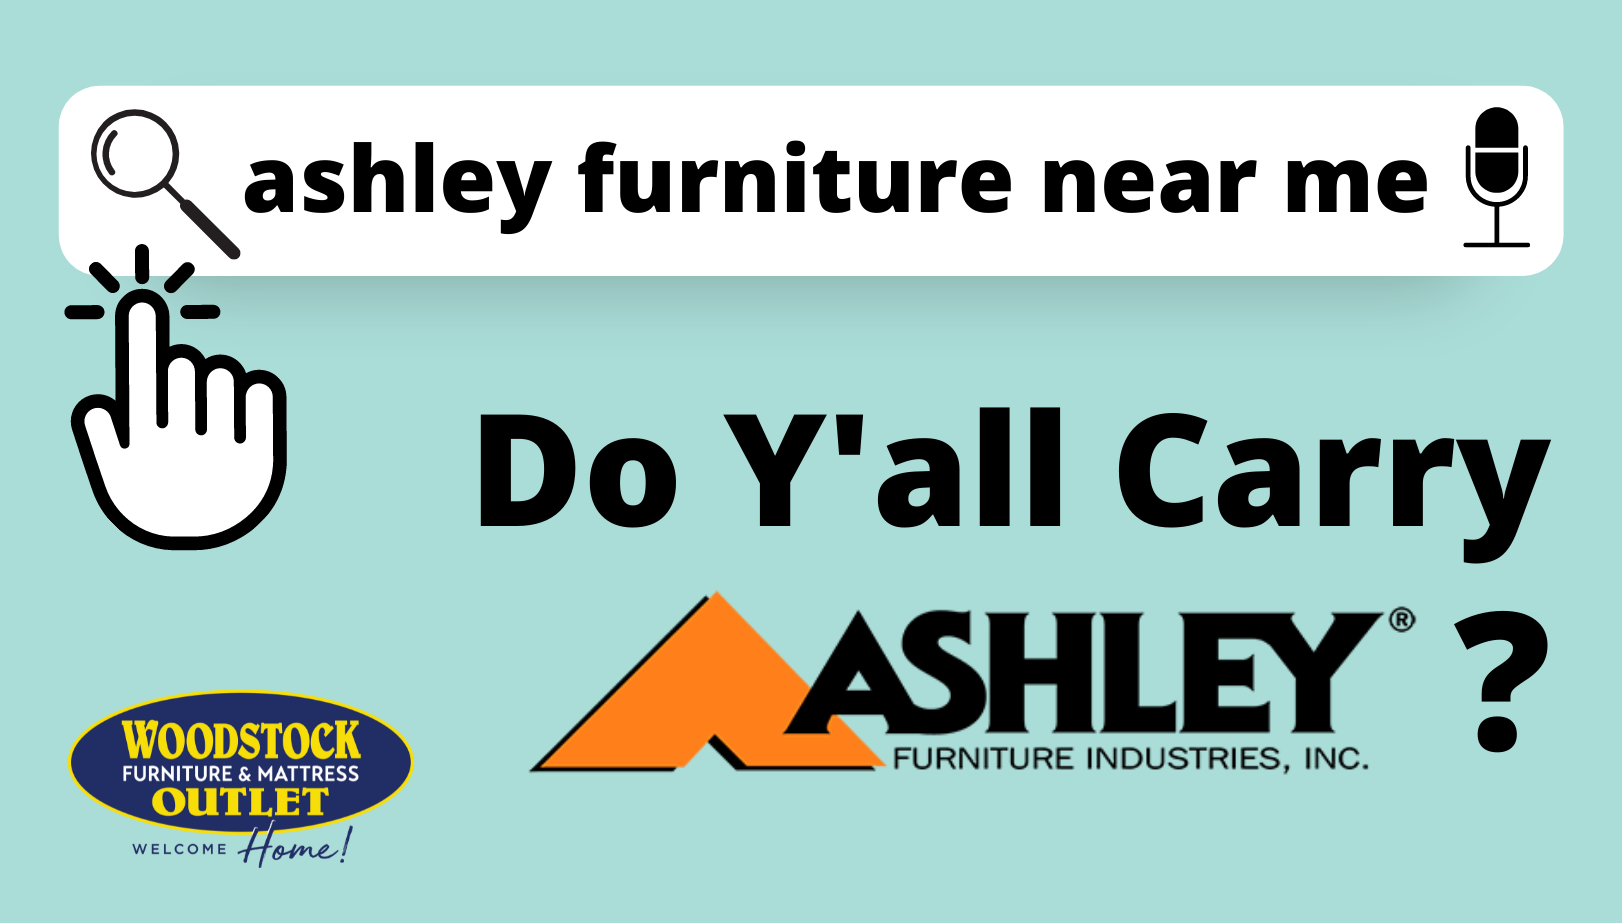 Ashley Furniture Near Me: Do Y'all Carry Ashley Furniture?